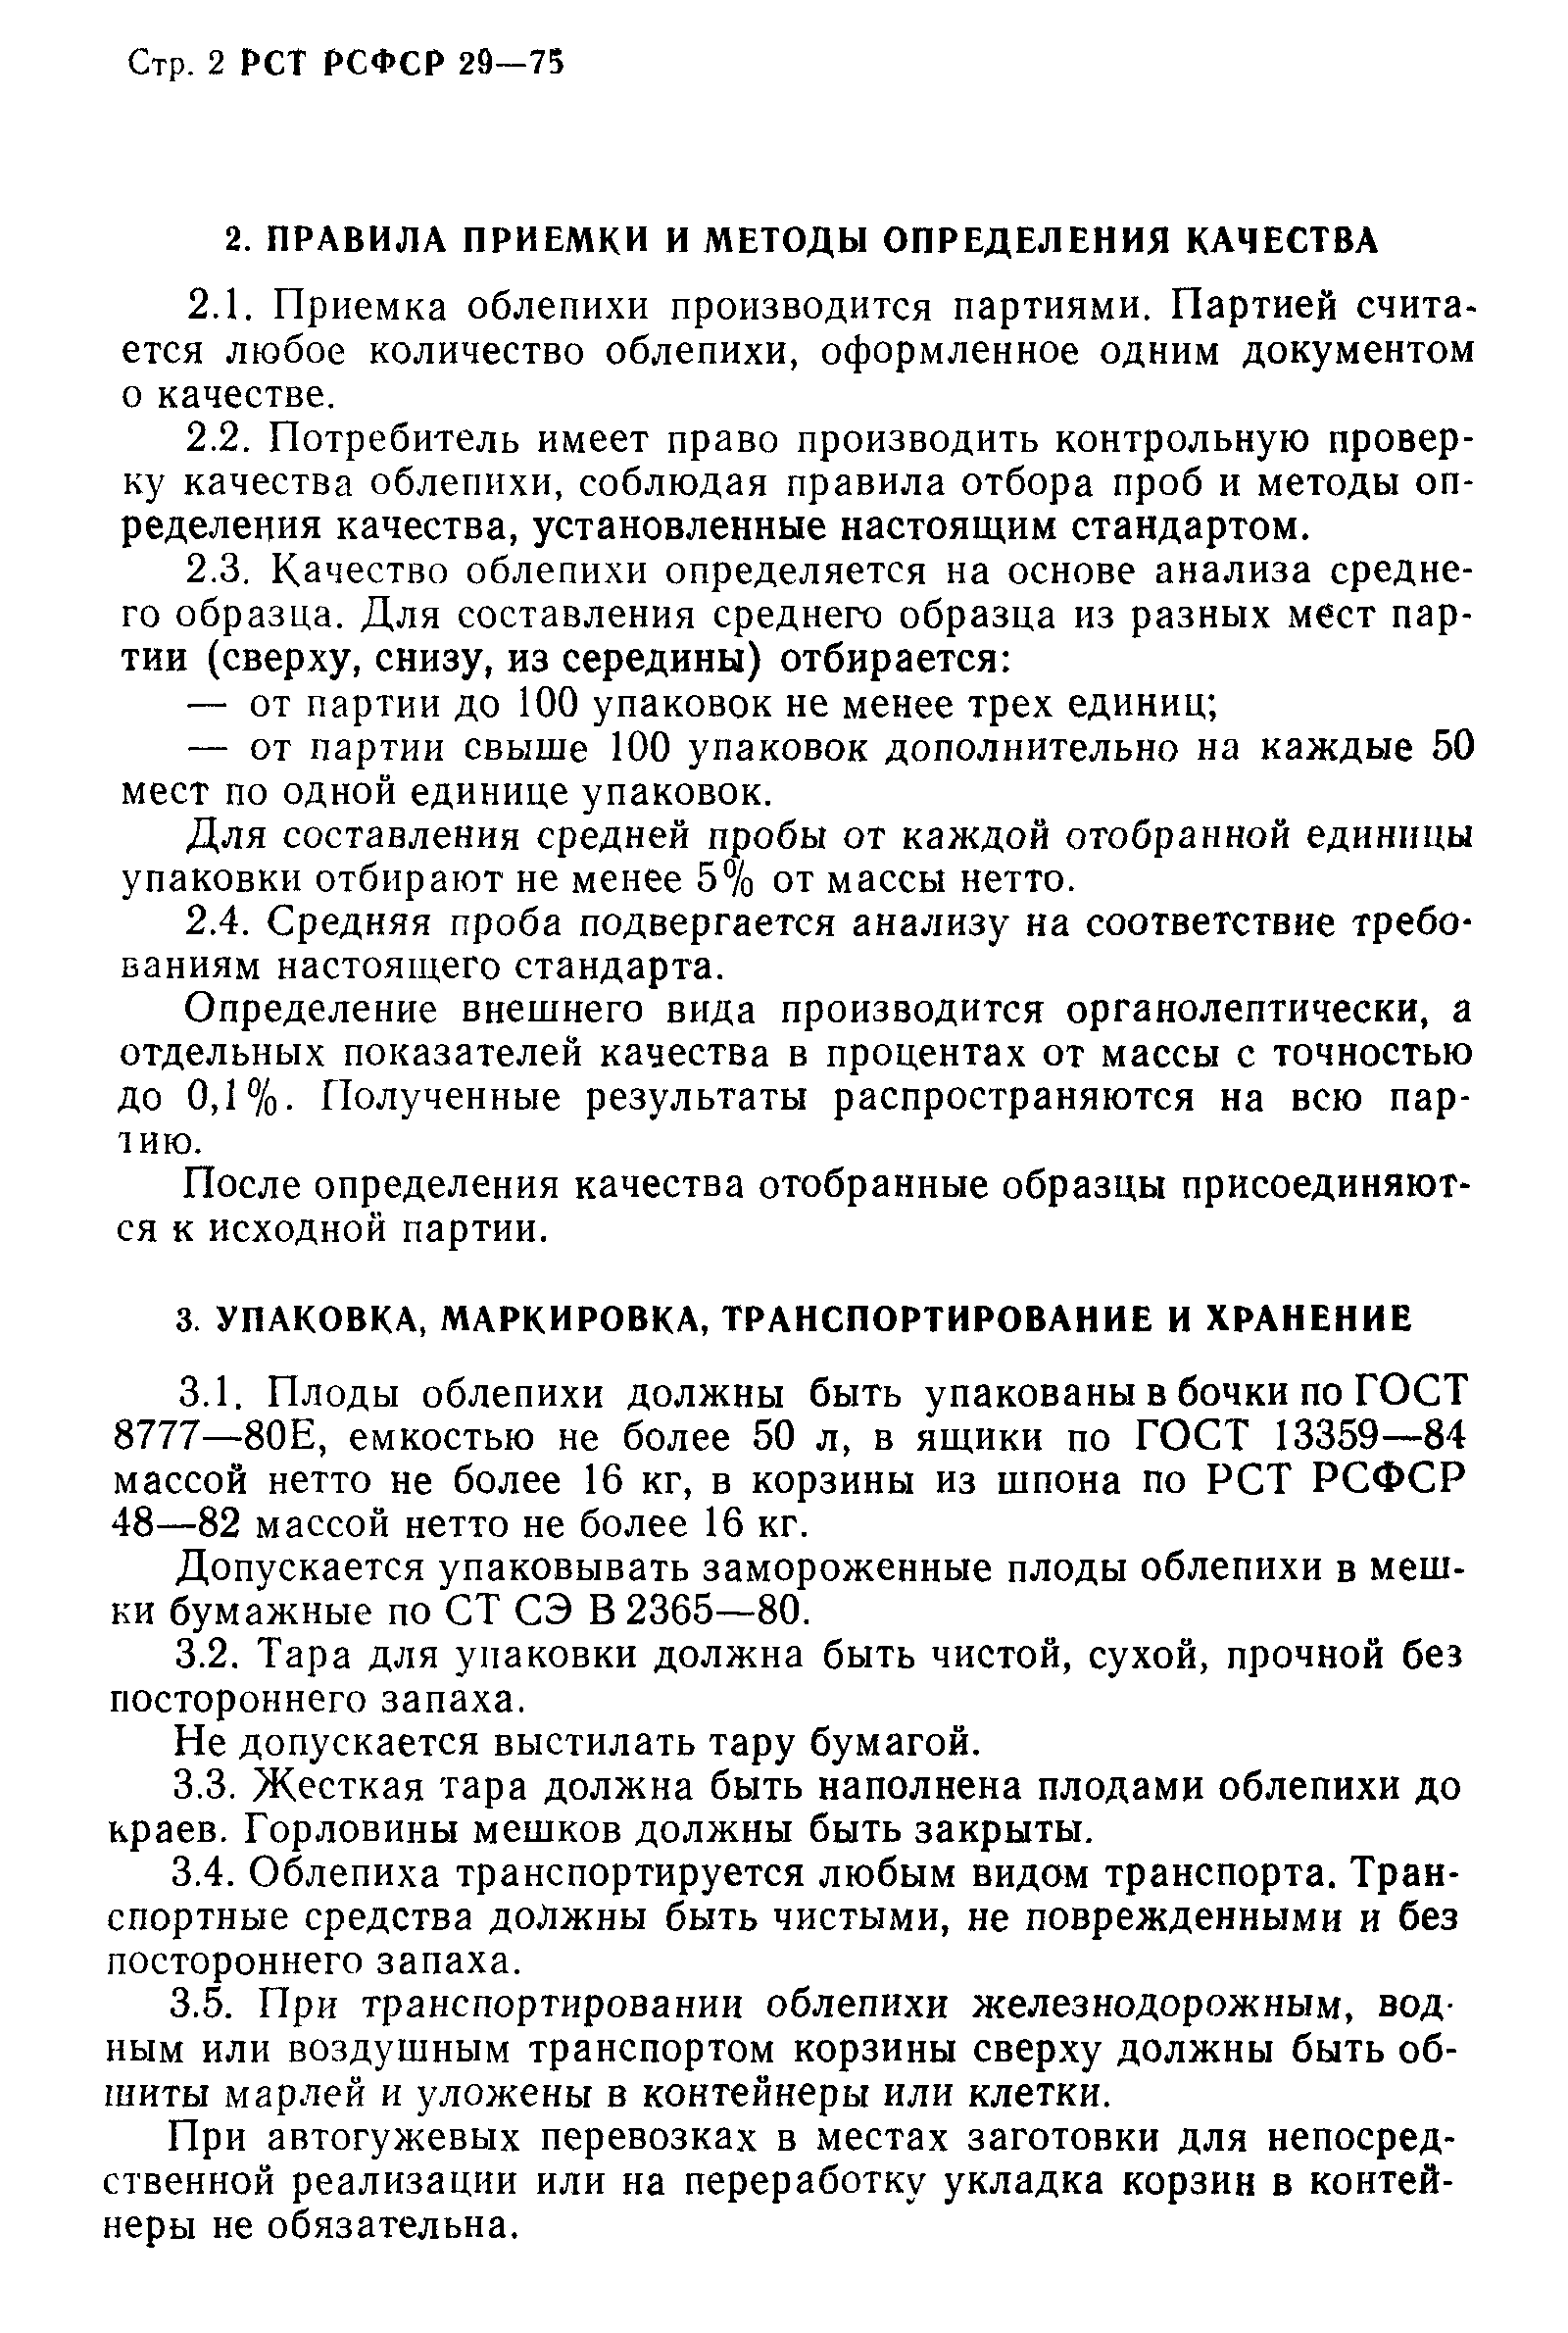 РСТ РСФСР 29-75